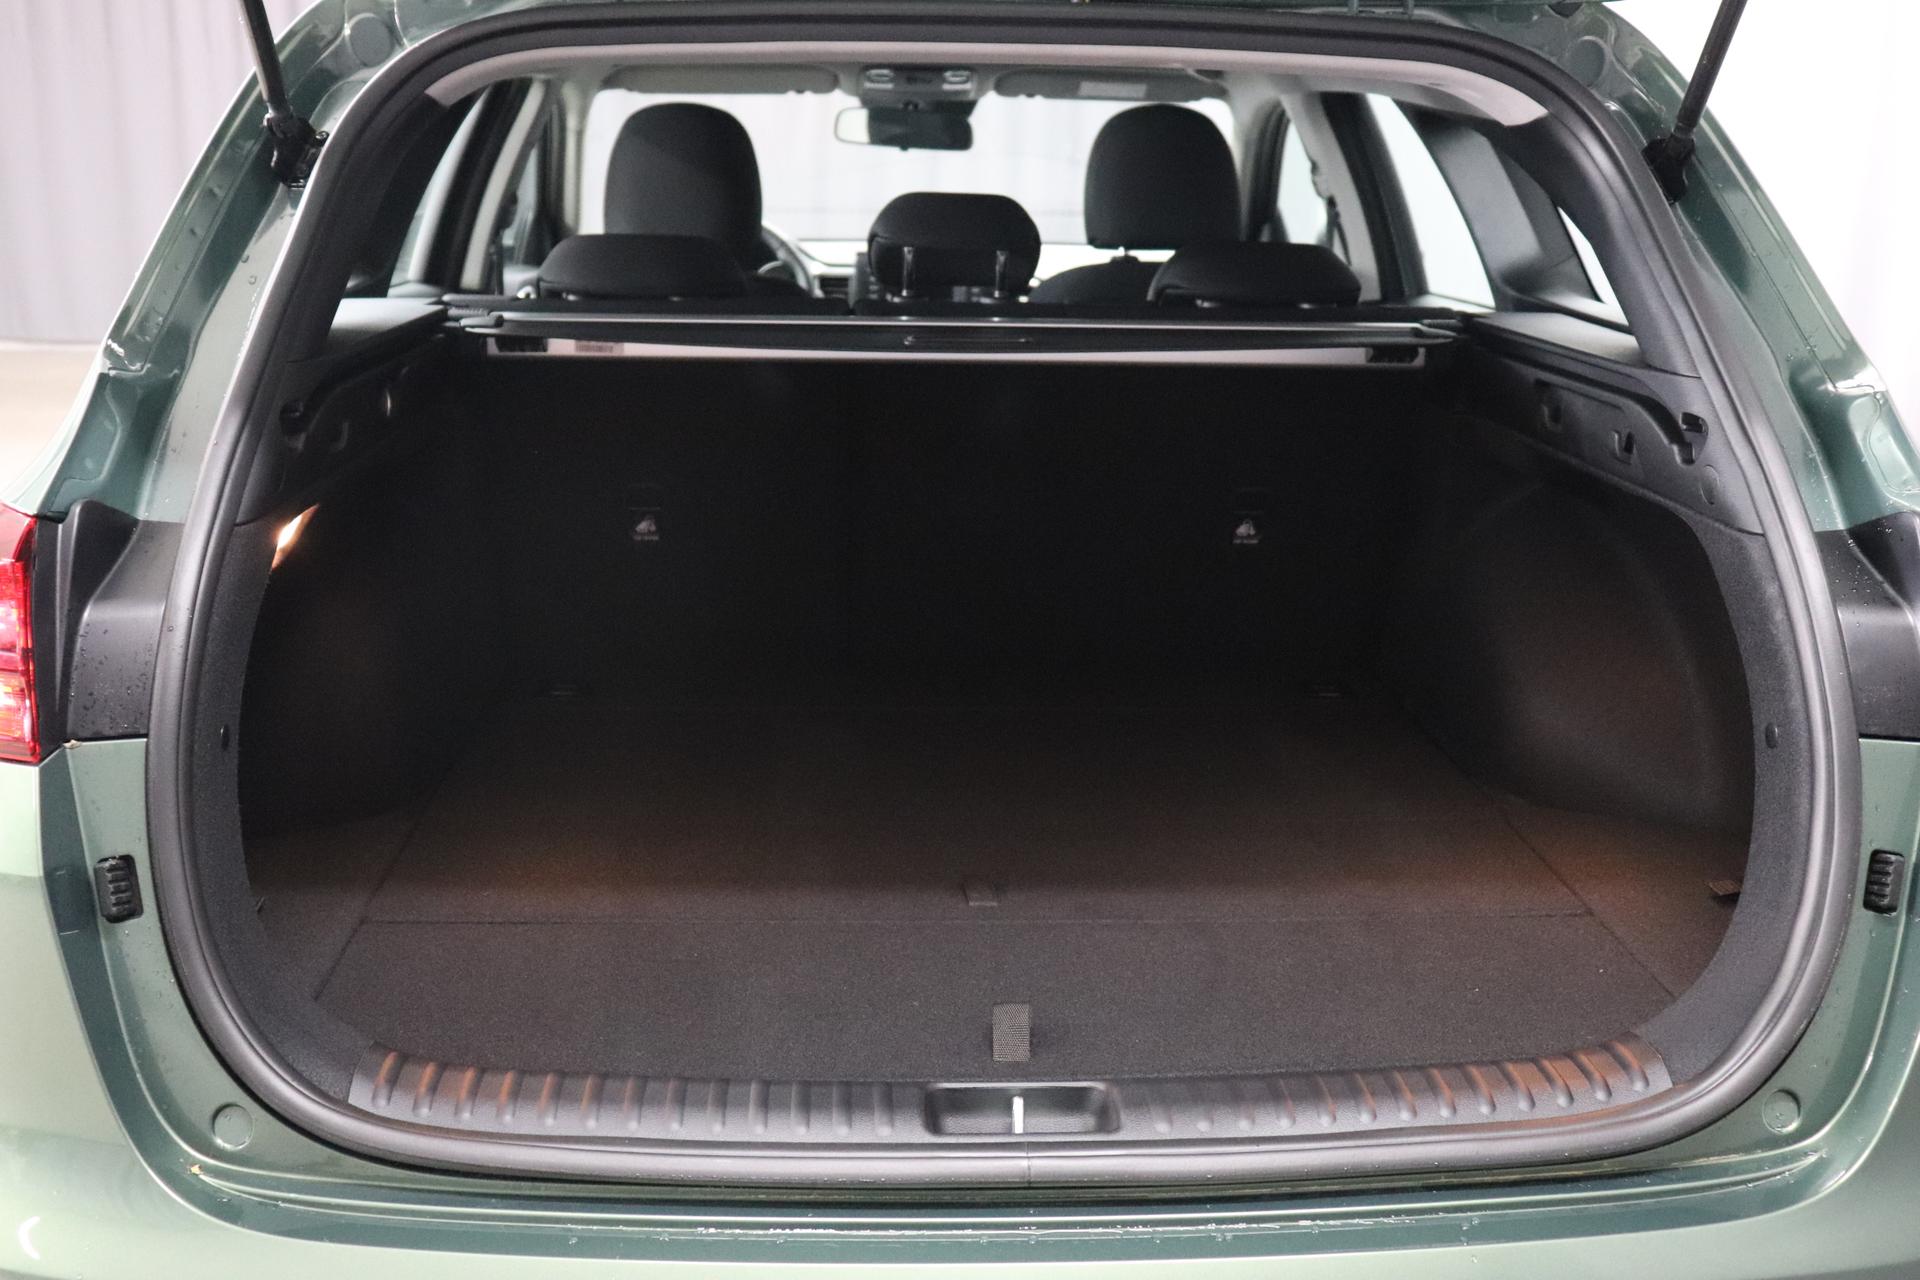 Kia Ceed Sportswagon Silver 1.0 T-GDI 74 kW (101 PS) Klimaanlage, Radio,  DAB, Sitzheizung, Lenkradheizung, Bluetooth, Freisprecheinrichtung,  Lichtsensor, Einparkhilfe hinten, Tempomat, Frontkolisionswarner,  Spurfolgeassistent, uvm.